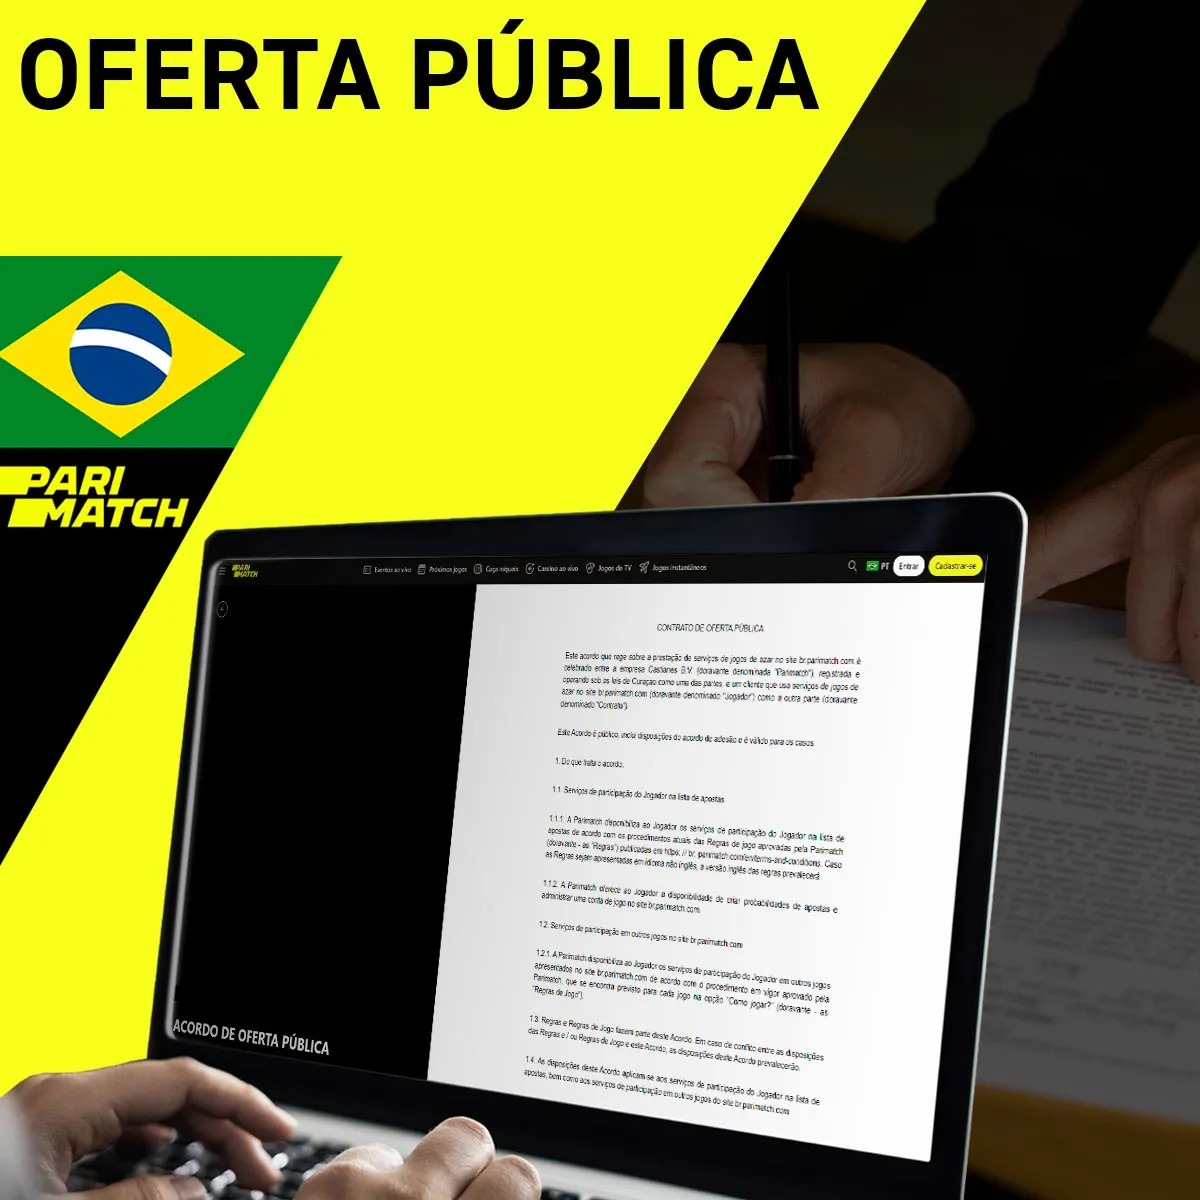 Oferta pública da casa de apostas Parimatch no Brasil